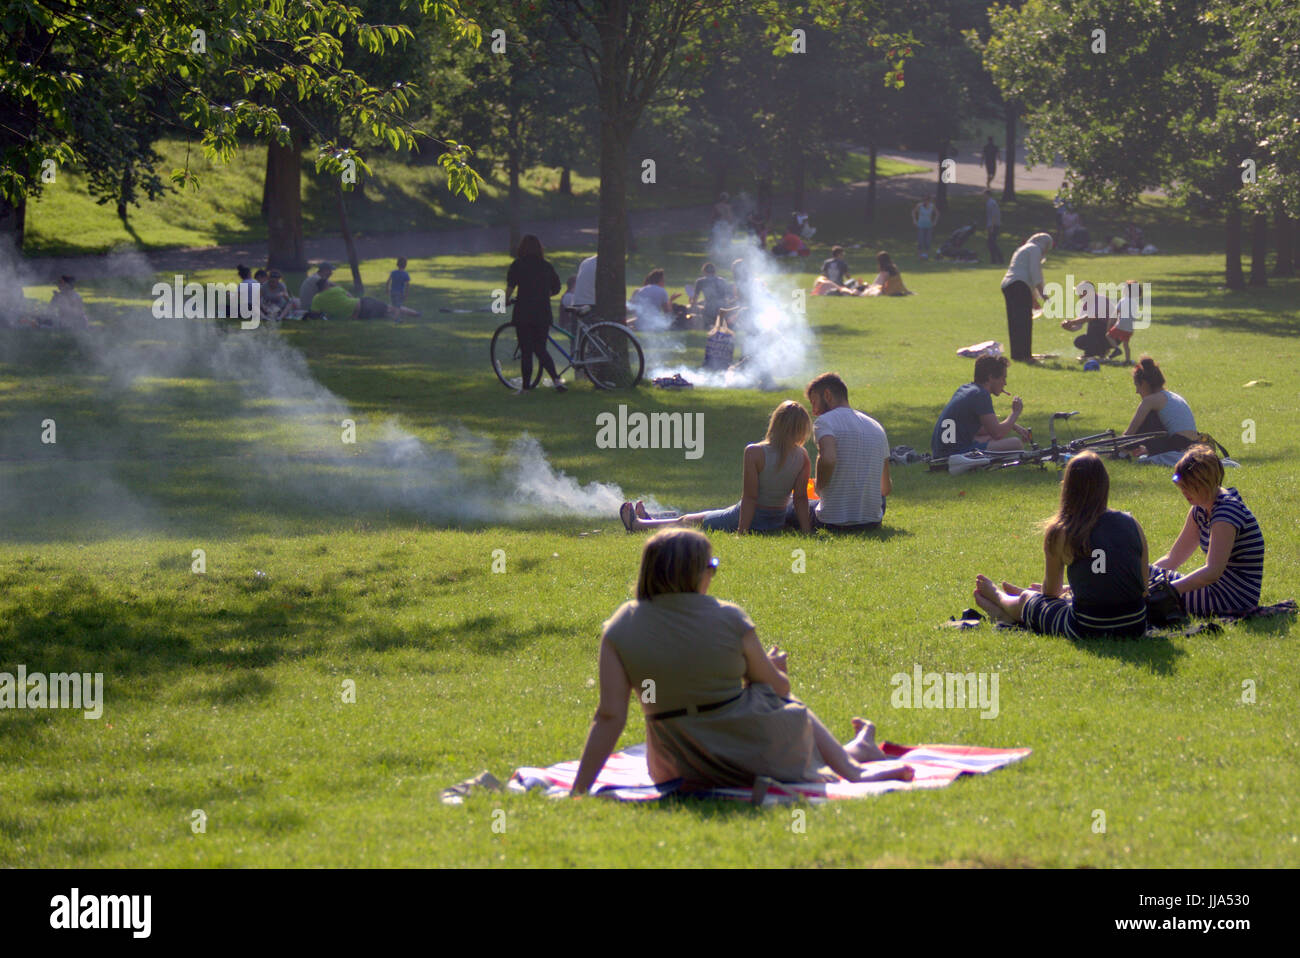 Glasgow, Ecosse, Royaume-Uni. 18 juillet, 2017. En été, les retours et les gens apprécient l'été dans la ville, comme l'Écosse Kelvingrove Park attire certains des UK torride Crédit météo Gérard Ferry/Alamy news Banque D'Images